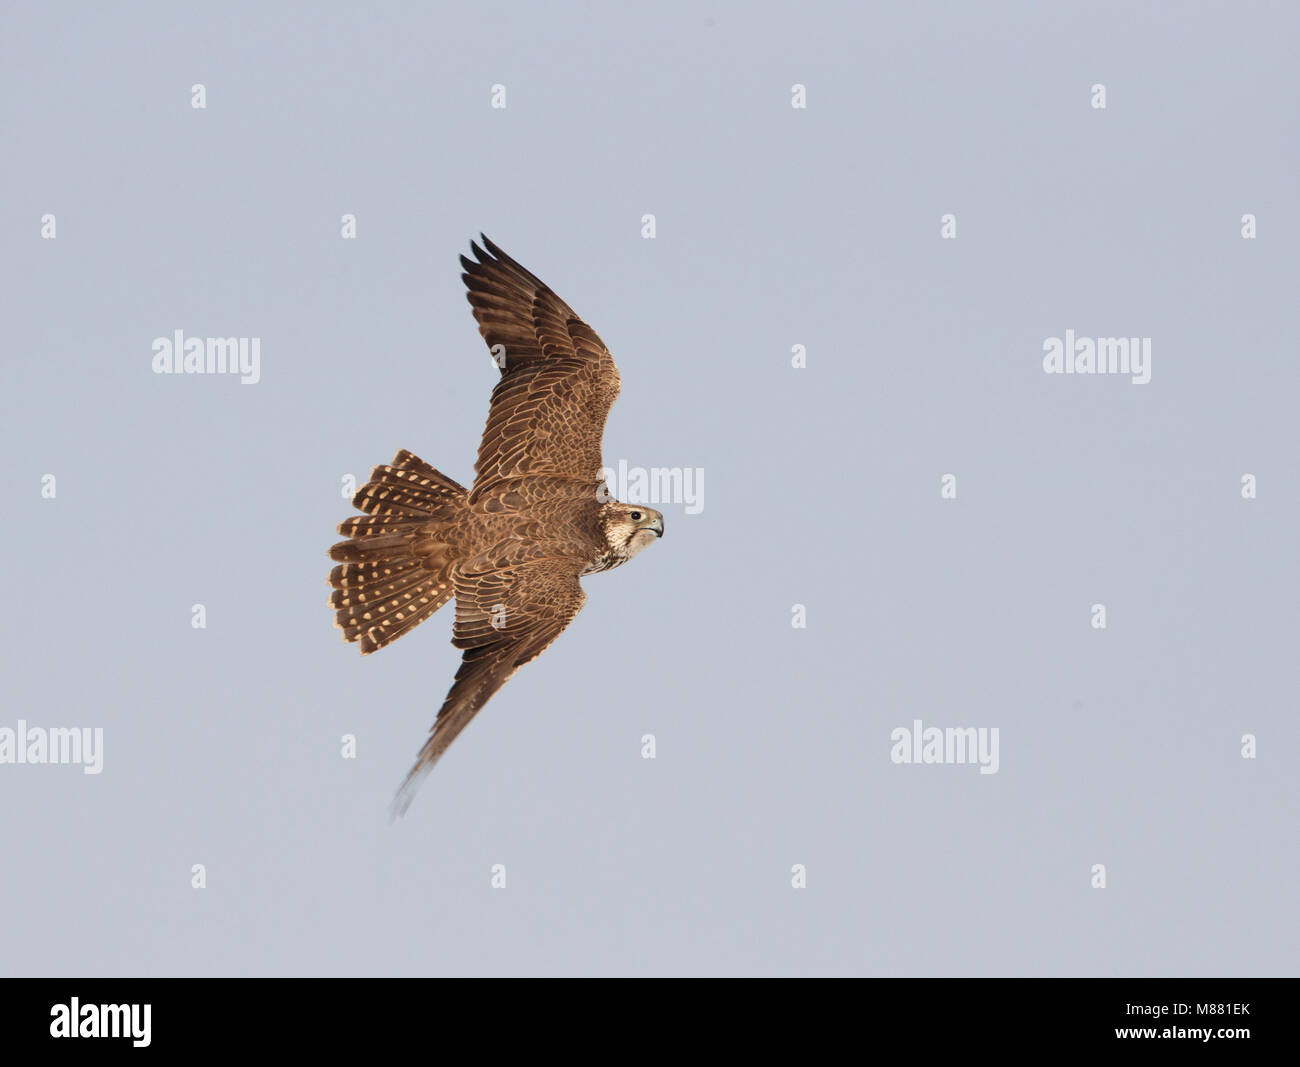 Saker Falcon in flight in Hungary. Stock Photo